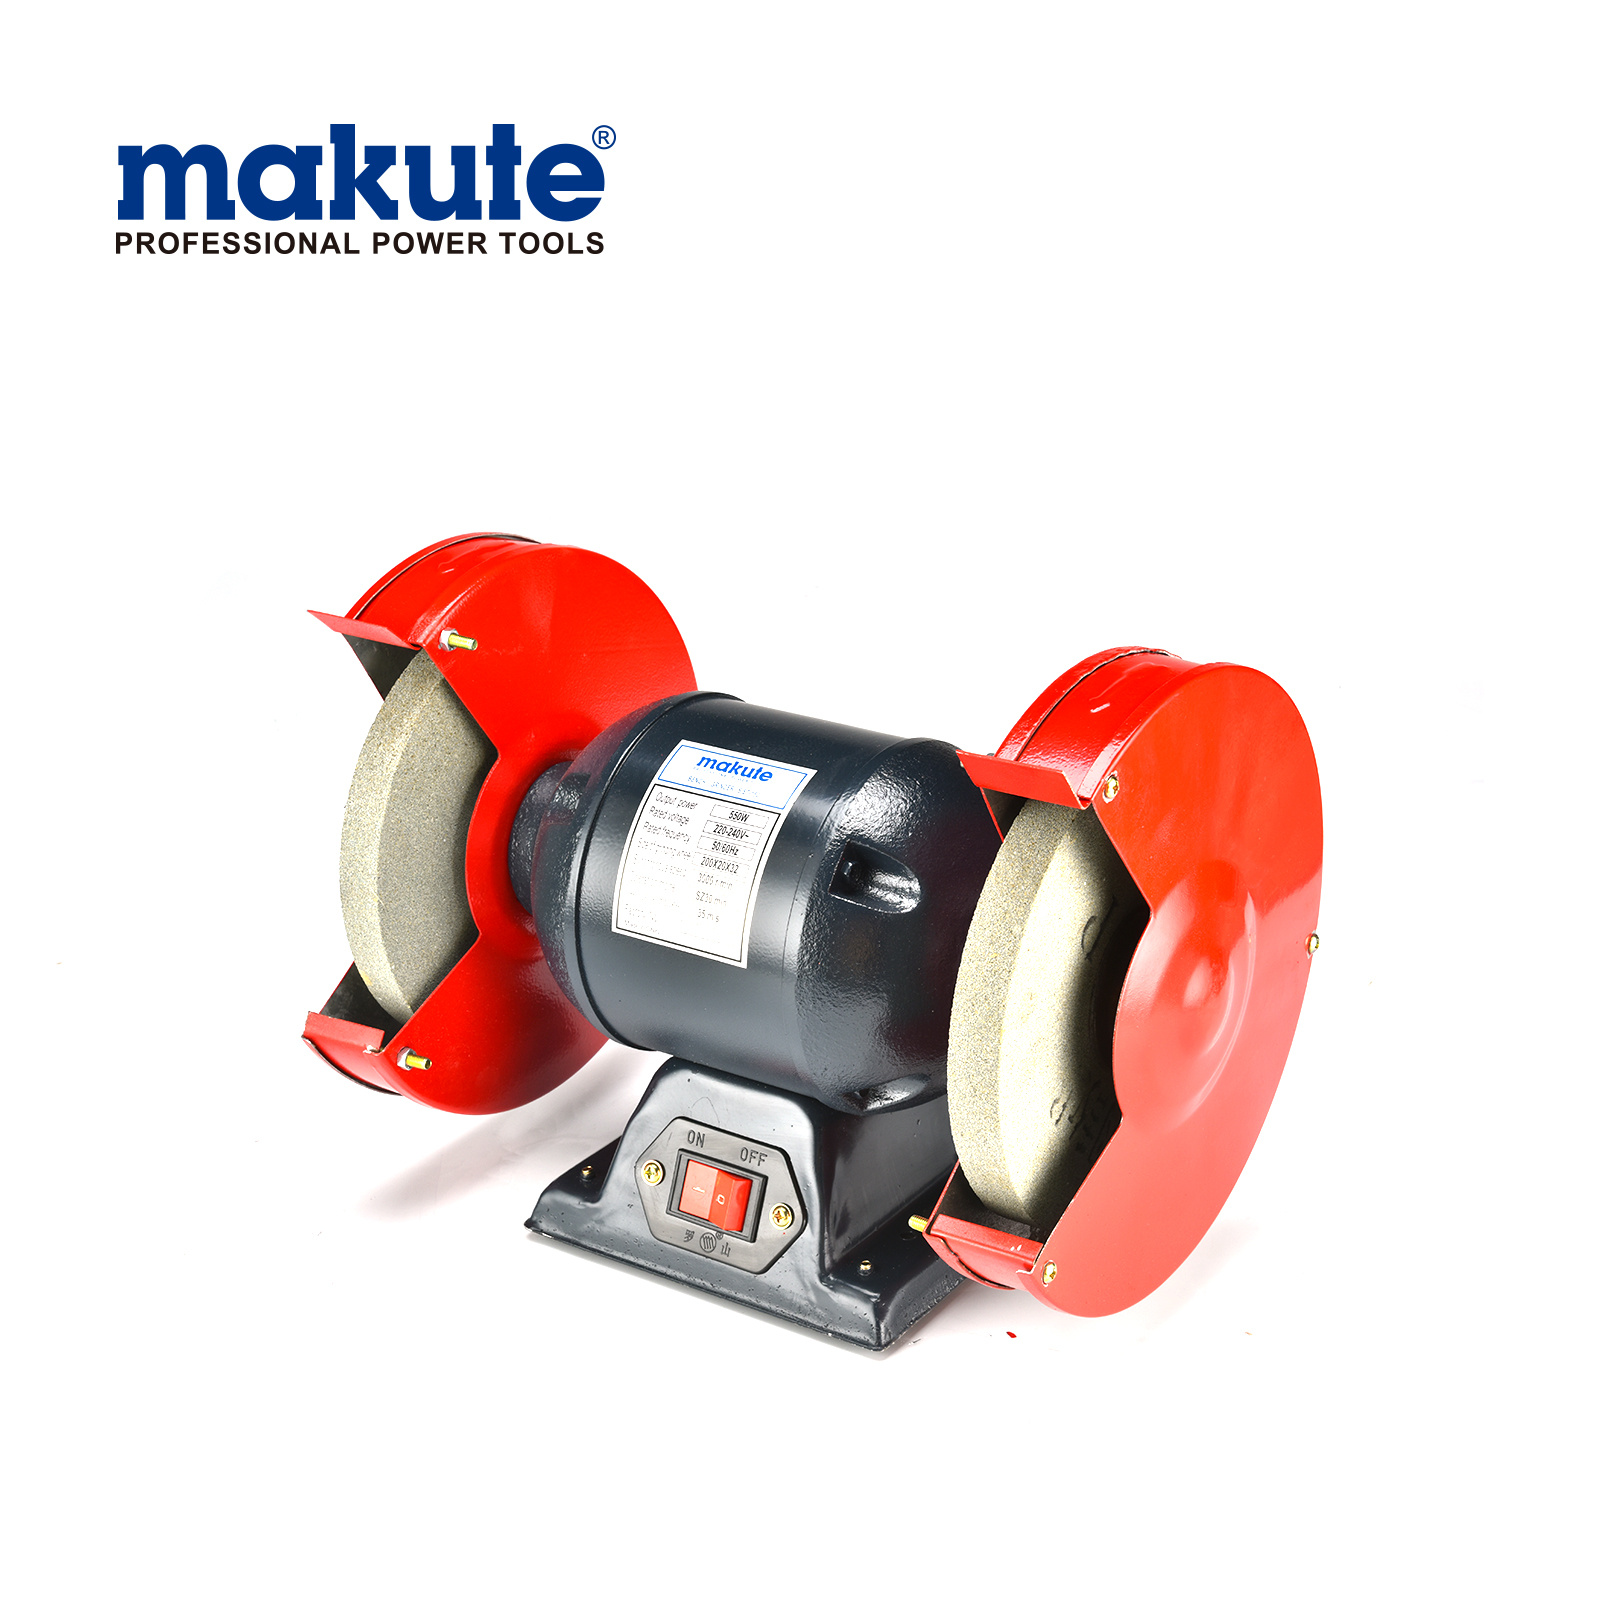 Makute herramienta industrial de alta calidad amoladora de banco 370 W máquina pulidora herramienta de banco eléctrica